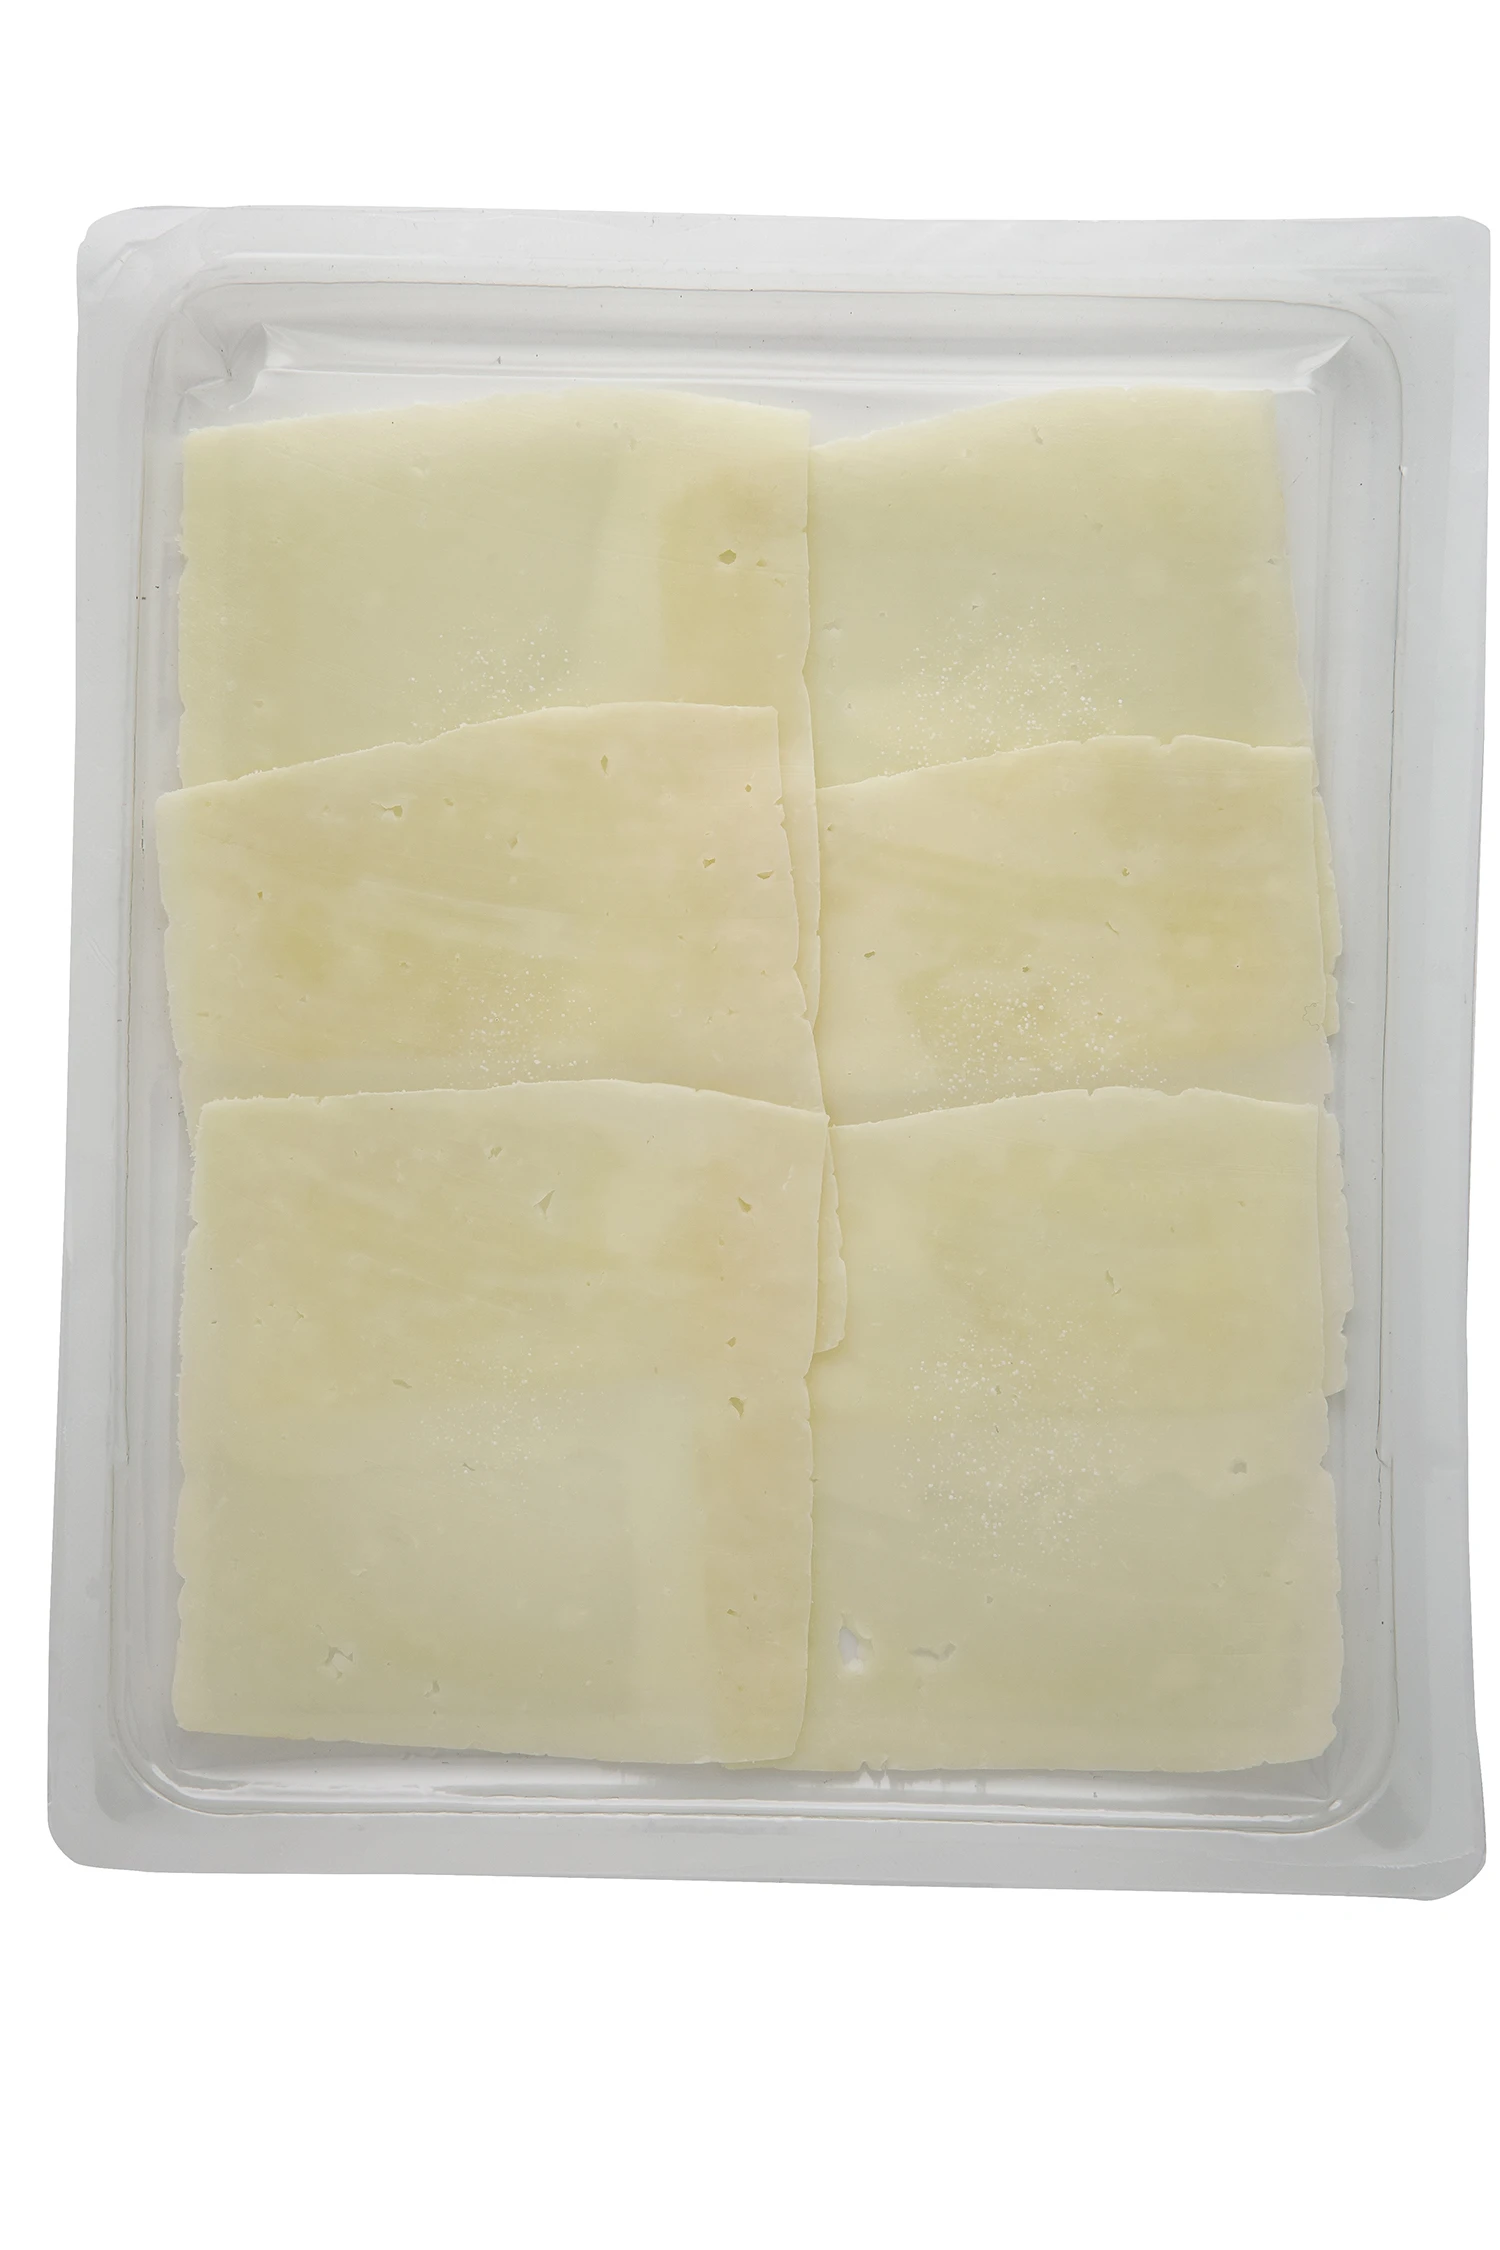 100 g  Sliced Pecorino Cheese  Giuseppe Verdi Selection made Italy